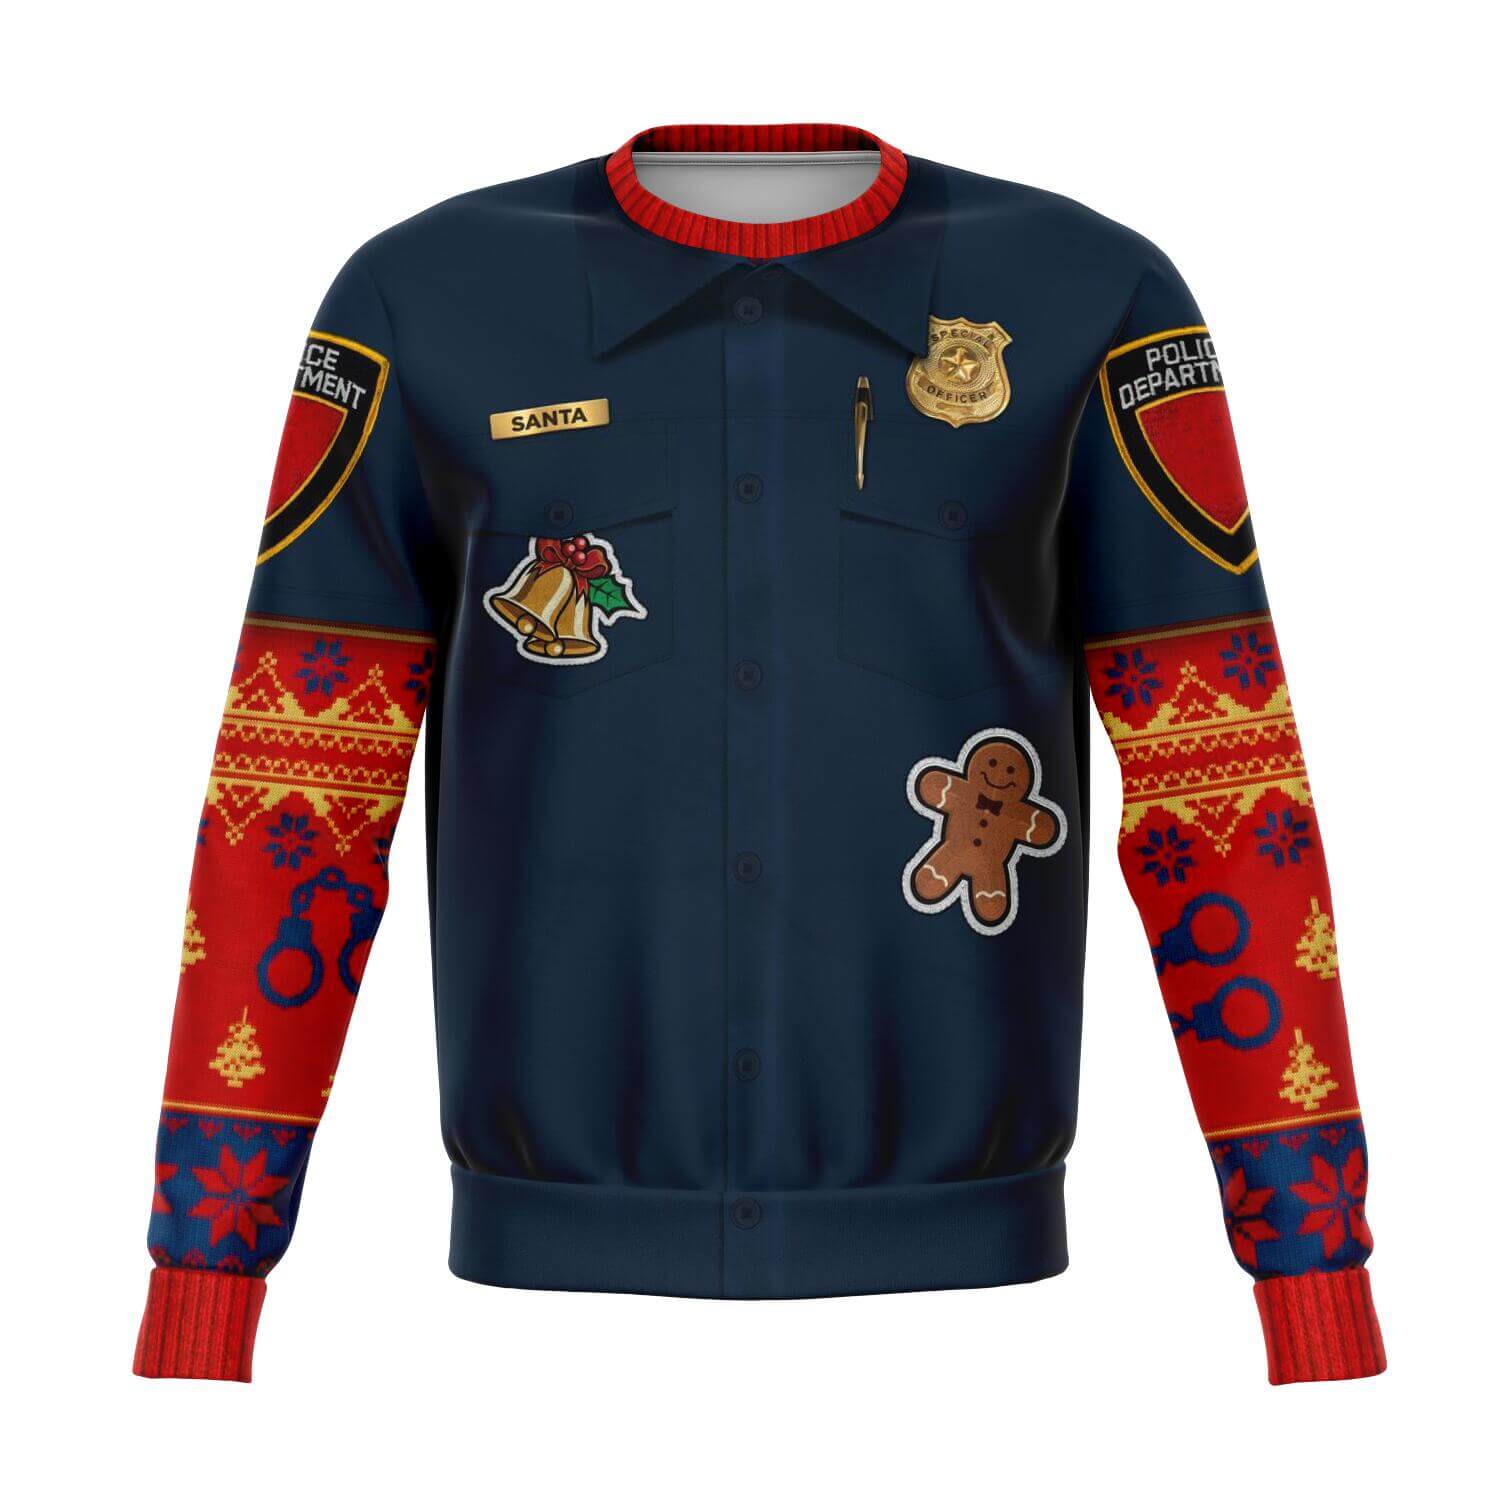 Police-Fun-Xmas-sweatshirt-front